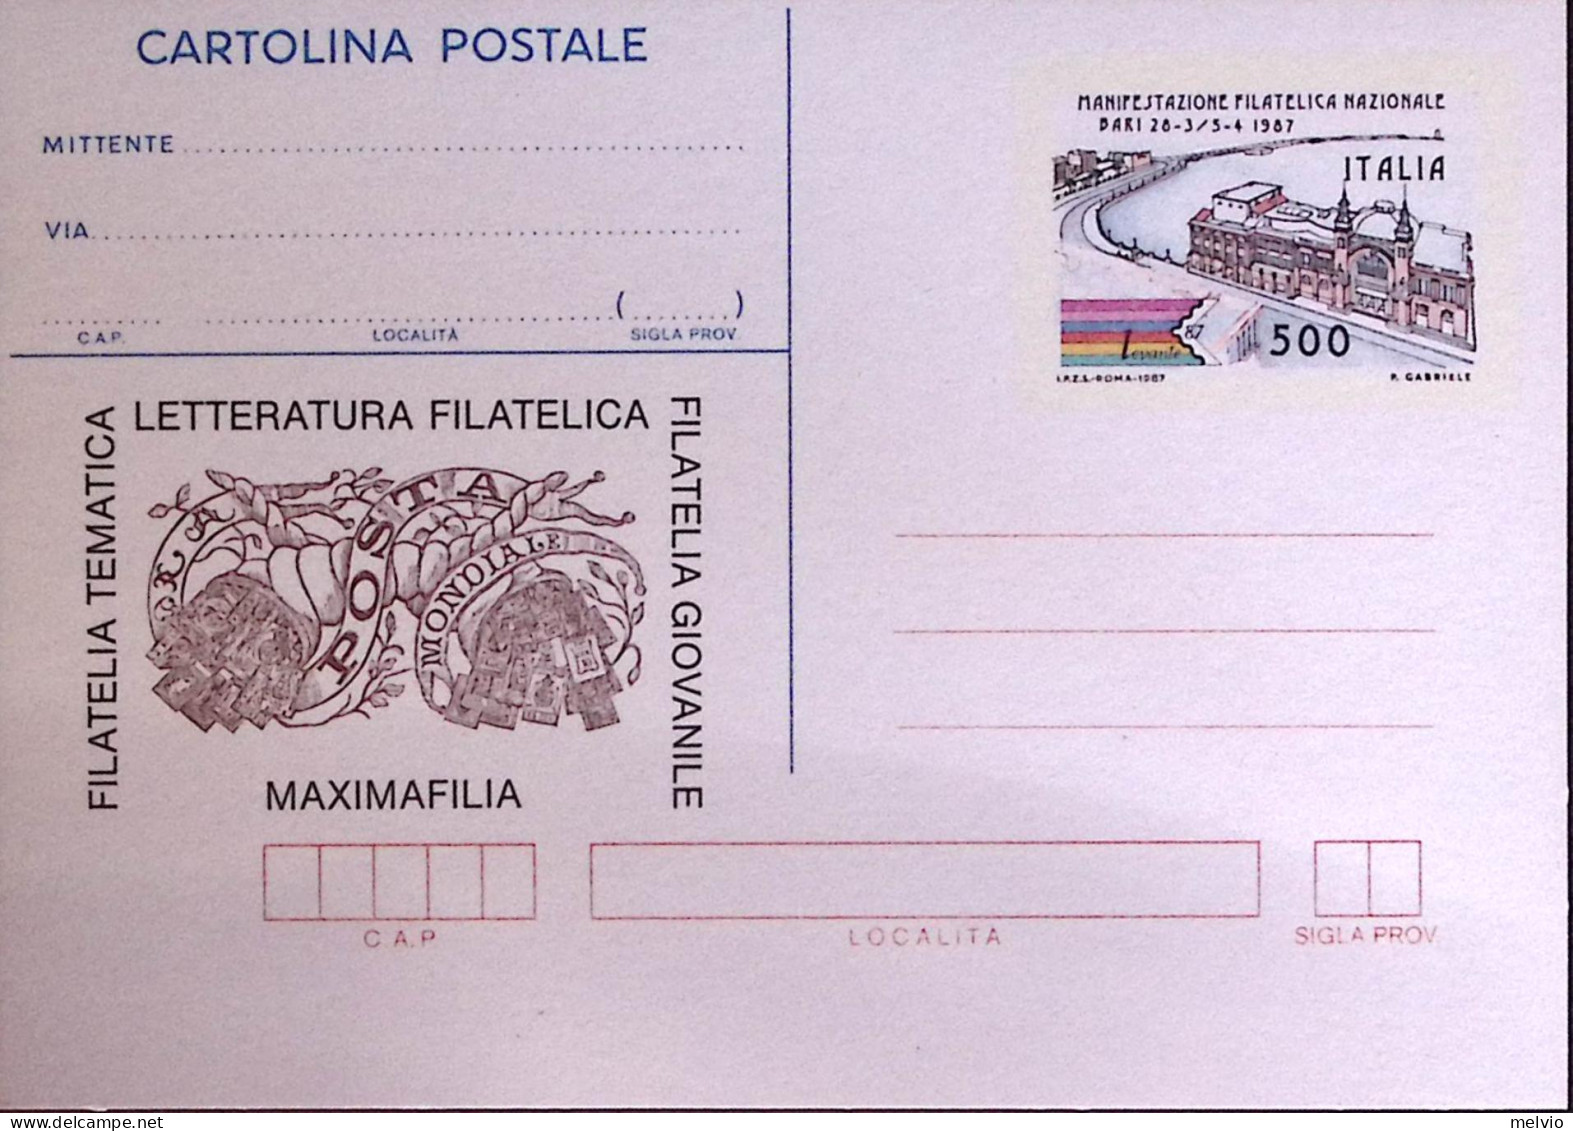 1987-Cartolina Postale Lire 500 Bari Nuova - Interi Postali